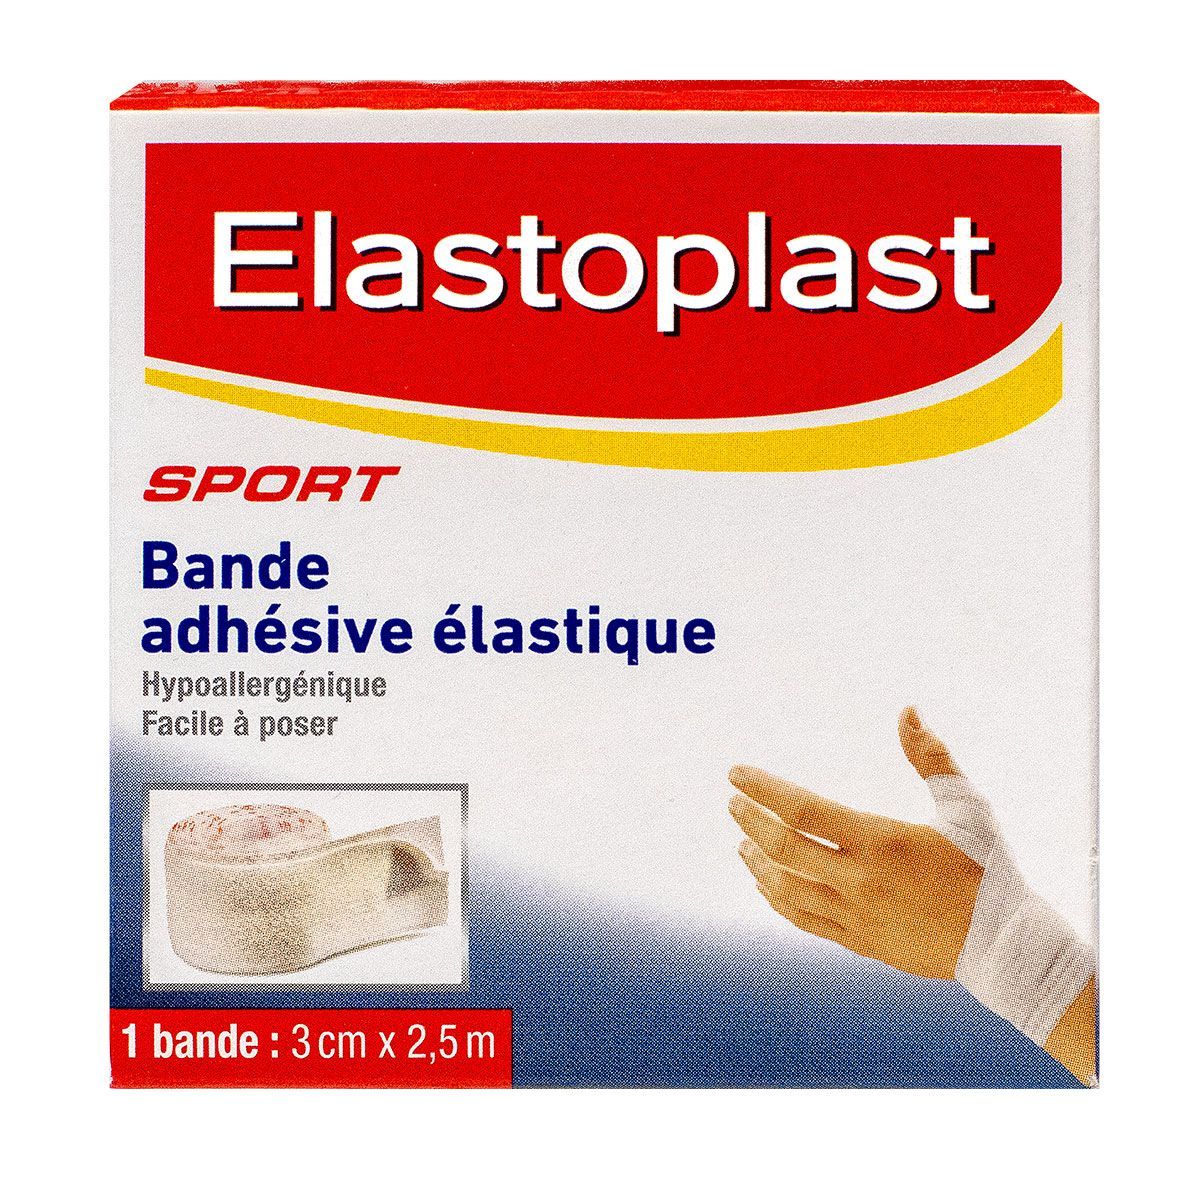 ELASTOPLAST - Bande adhésive élastique è 8cm x 2,5m